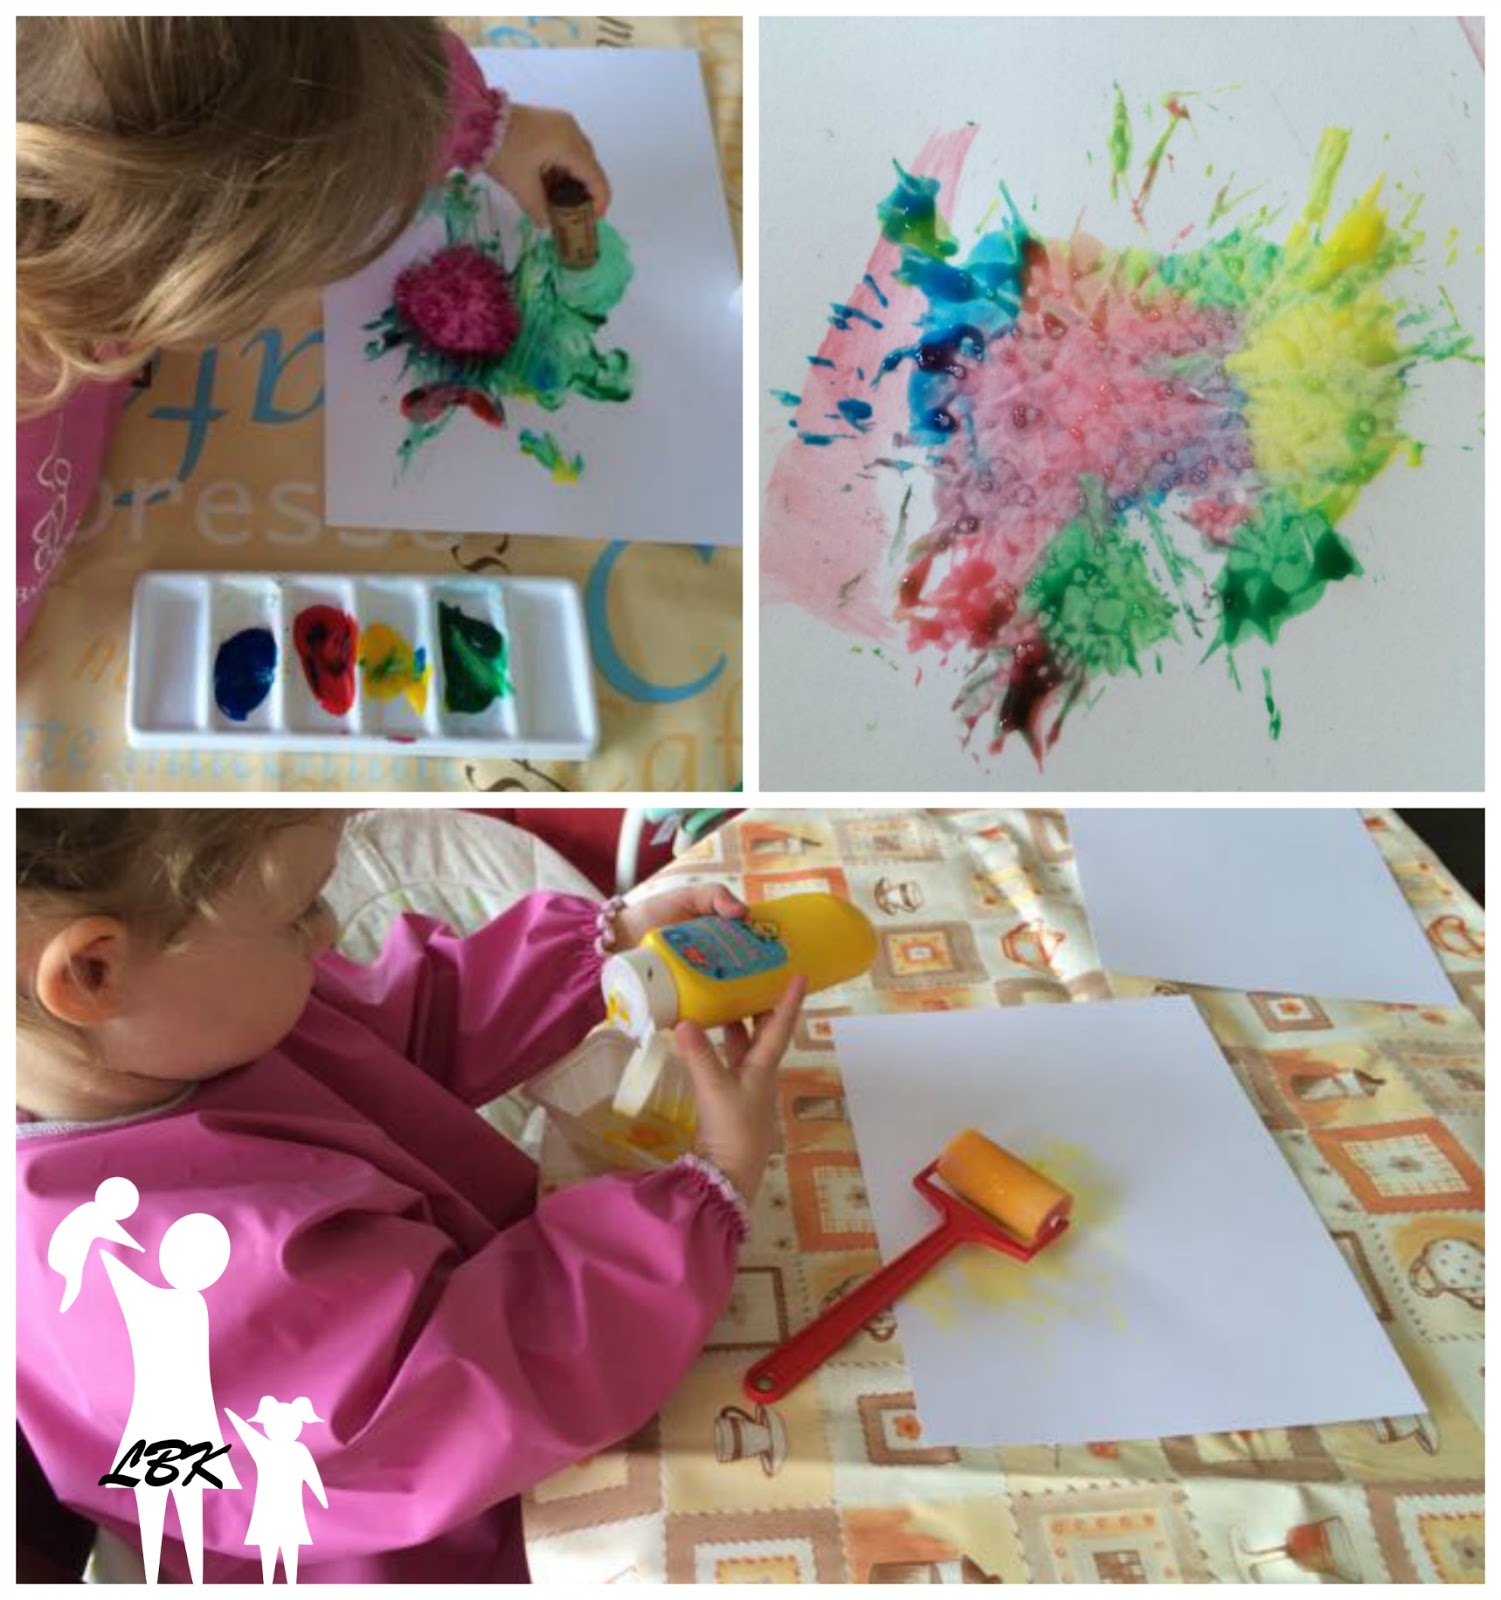 La peinture à doigts pour les petits, test et avis [Montessori inside]